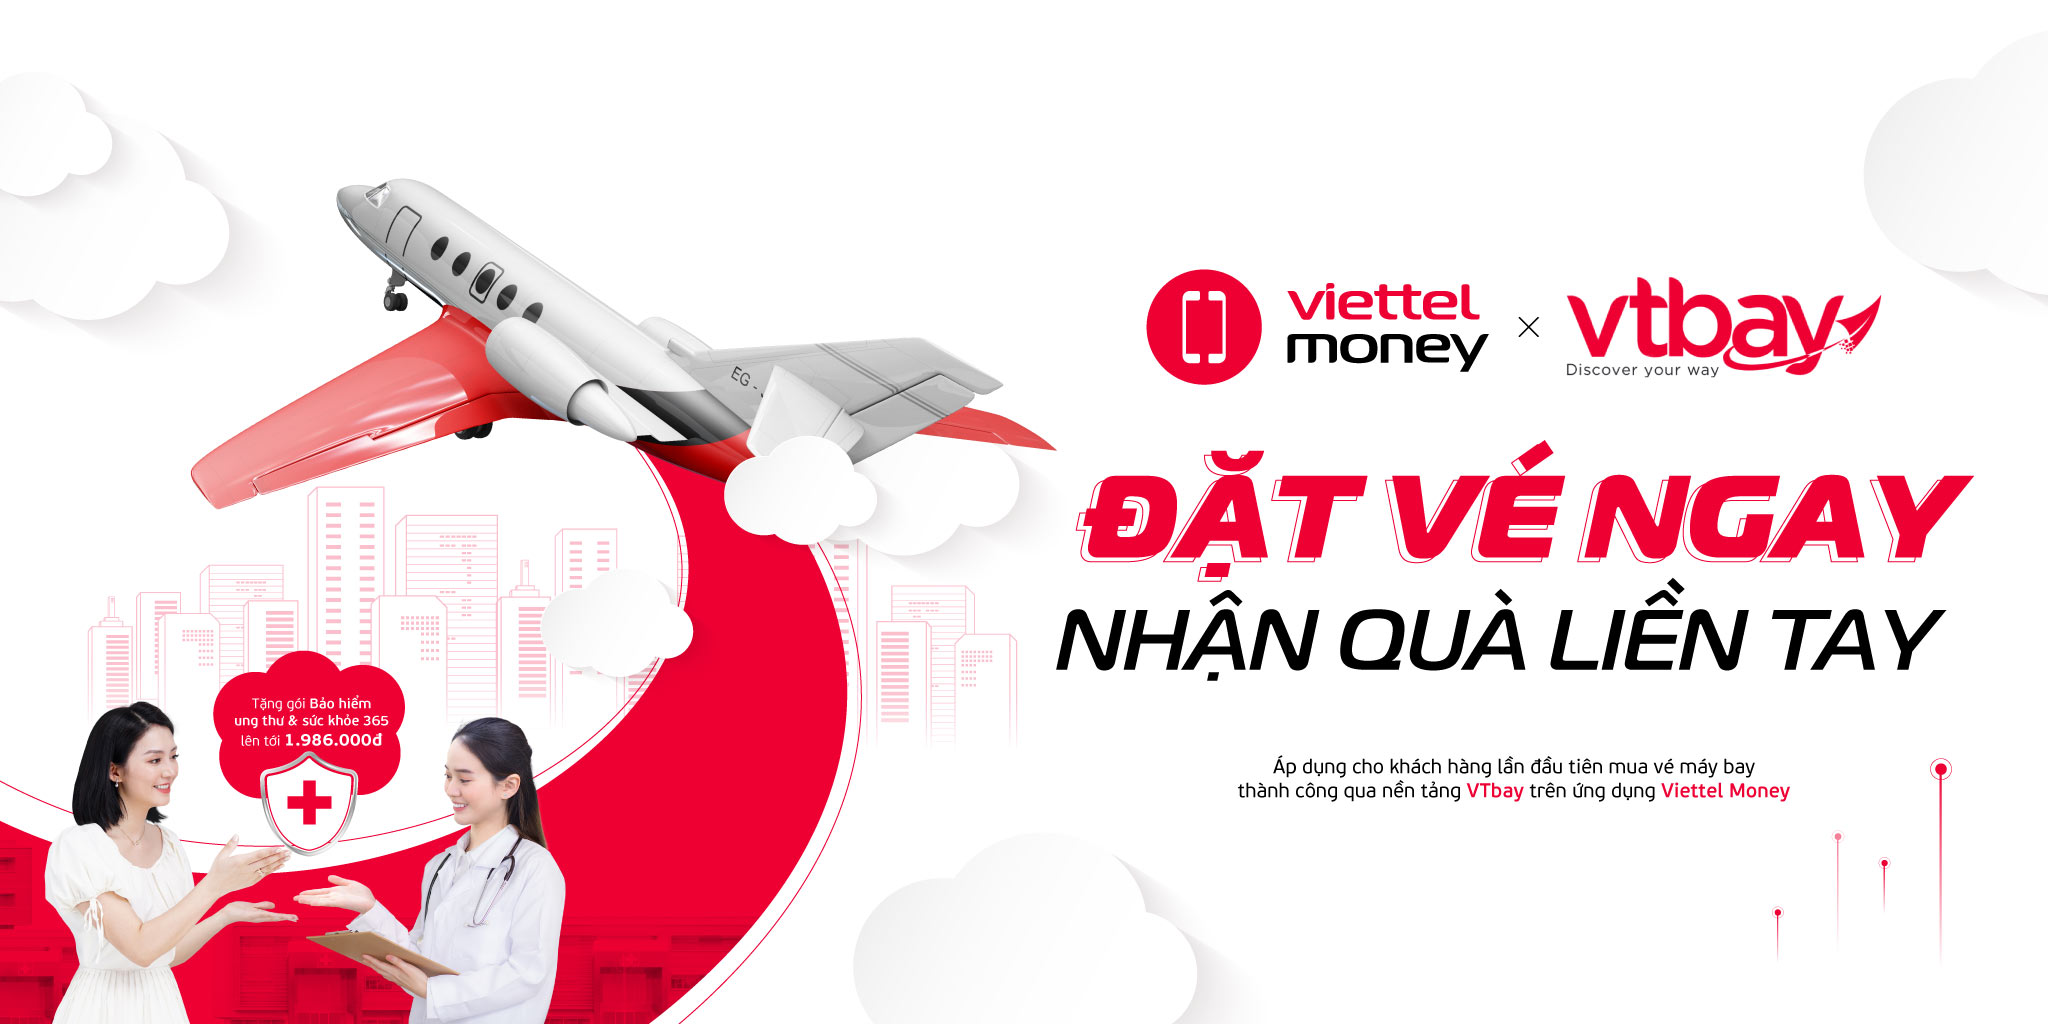 Viettel Money x VTBay: Đặt vé ngay – Nhận quà liền tay